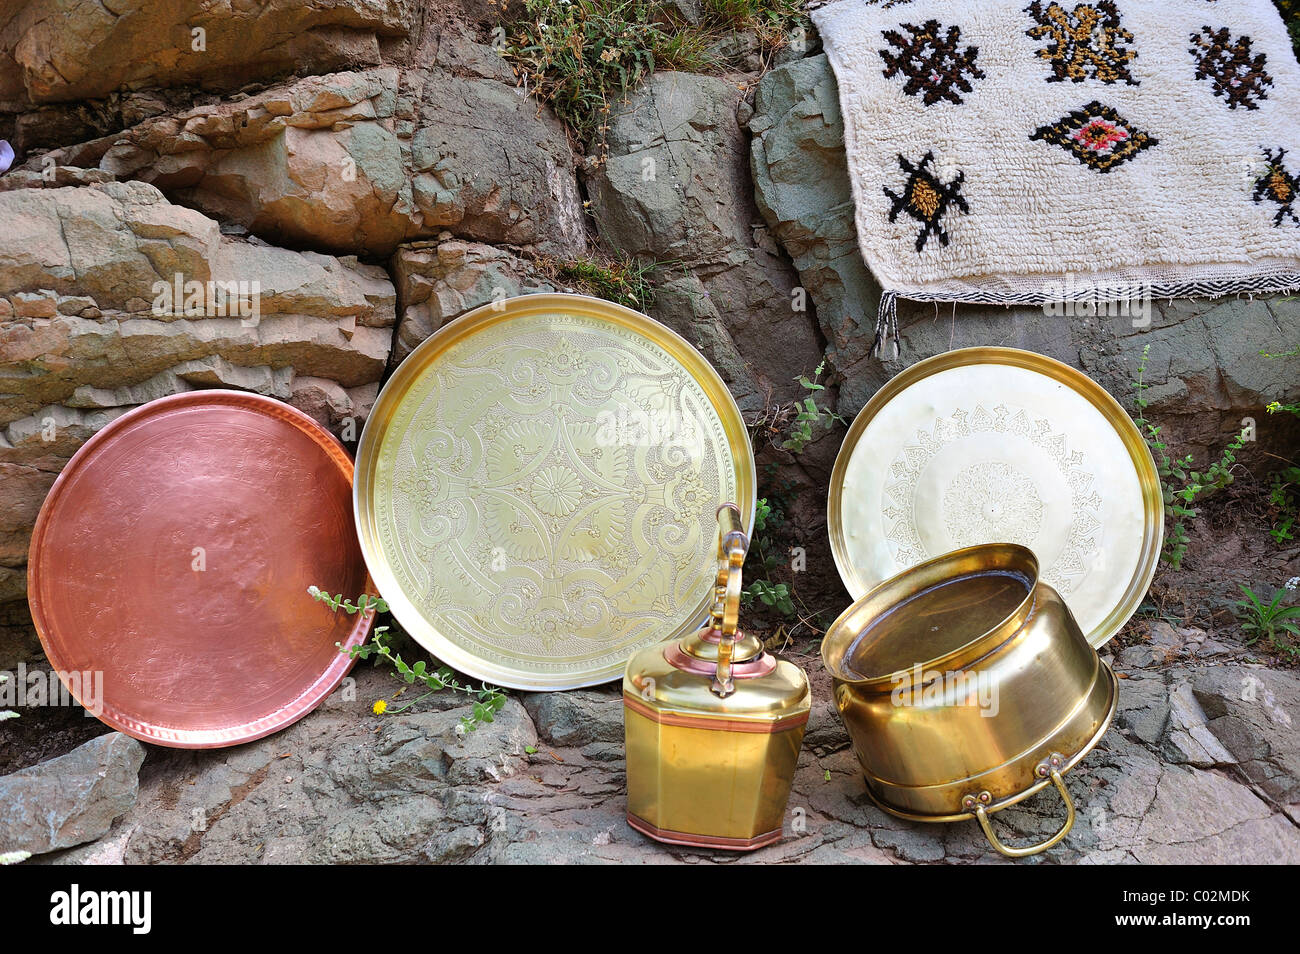 Lavate riccamente Ottone inciso vassoi e pentole disposte su una roccia a secco, Alto Atlante, Marocco, Africa Foto Stock